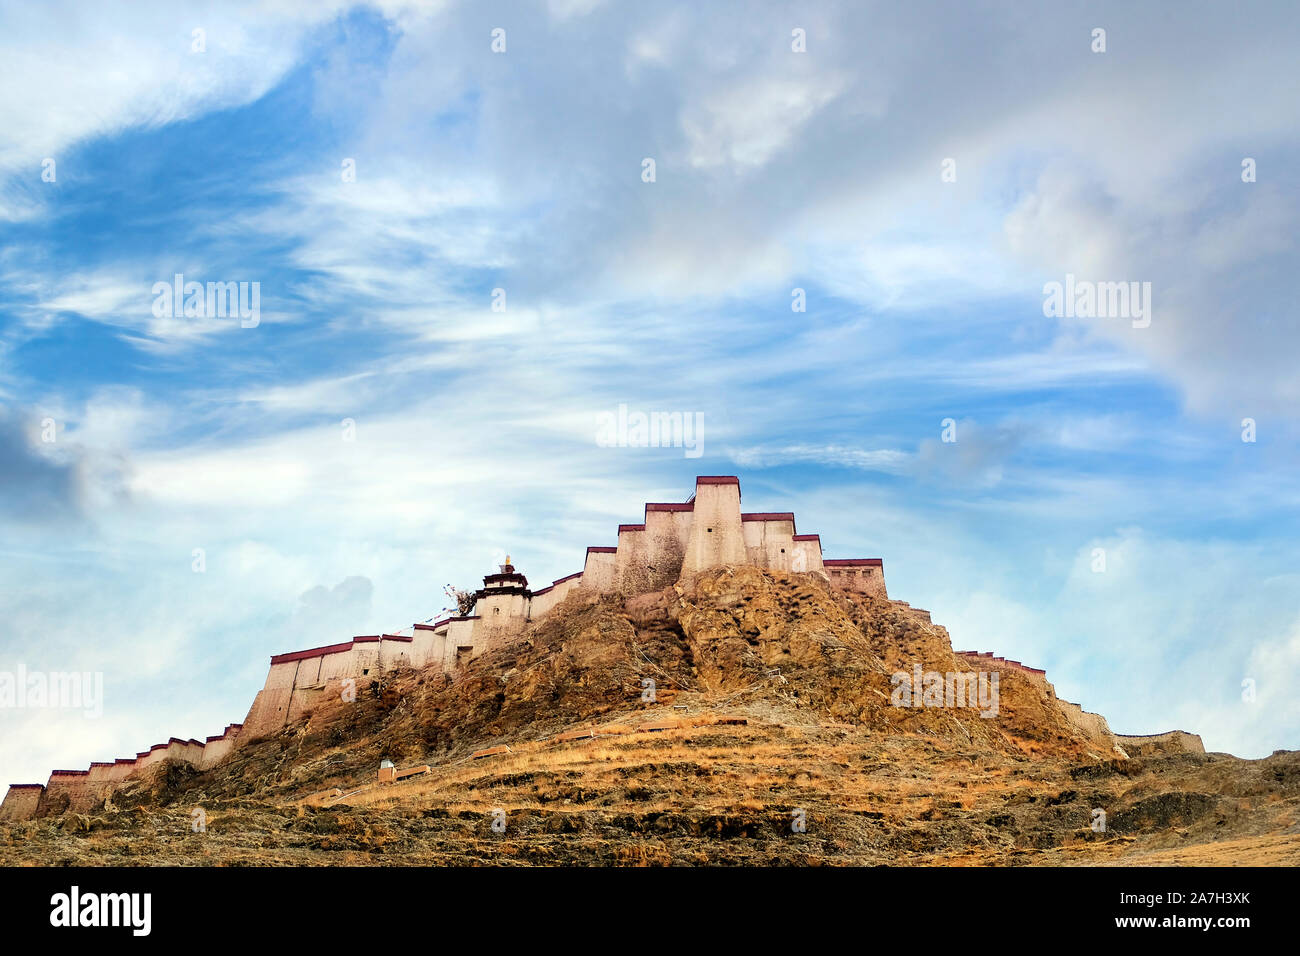 Ansicht des Tibetischen Festung von Gyantse, gegen ein blauer Himmel mit weißen Wolken bedeckt. Stockfoto